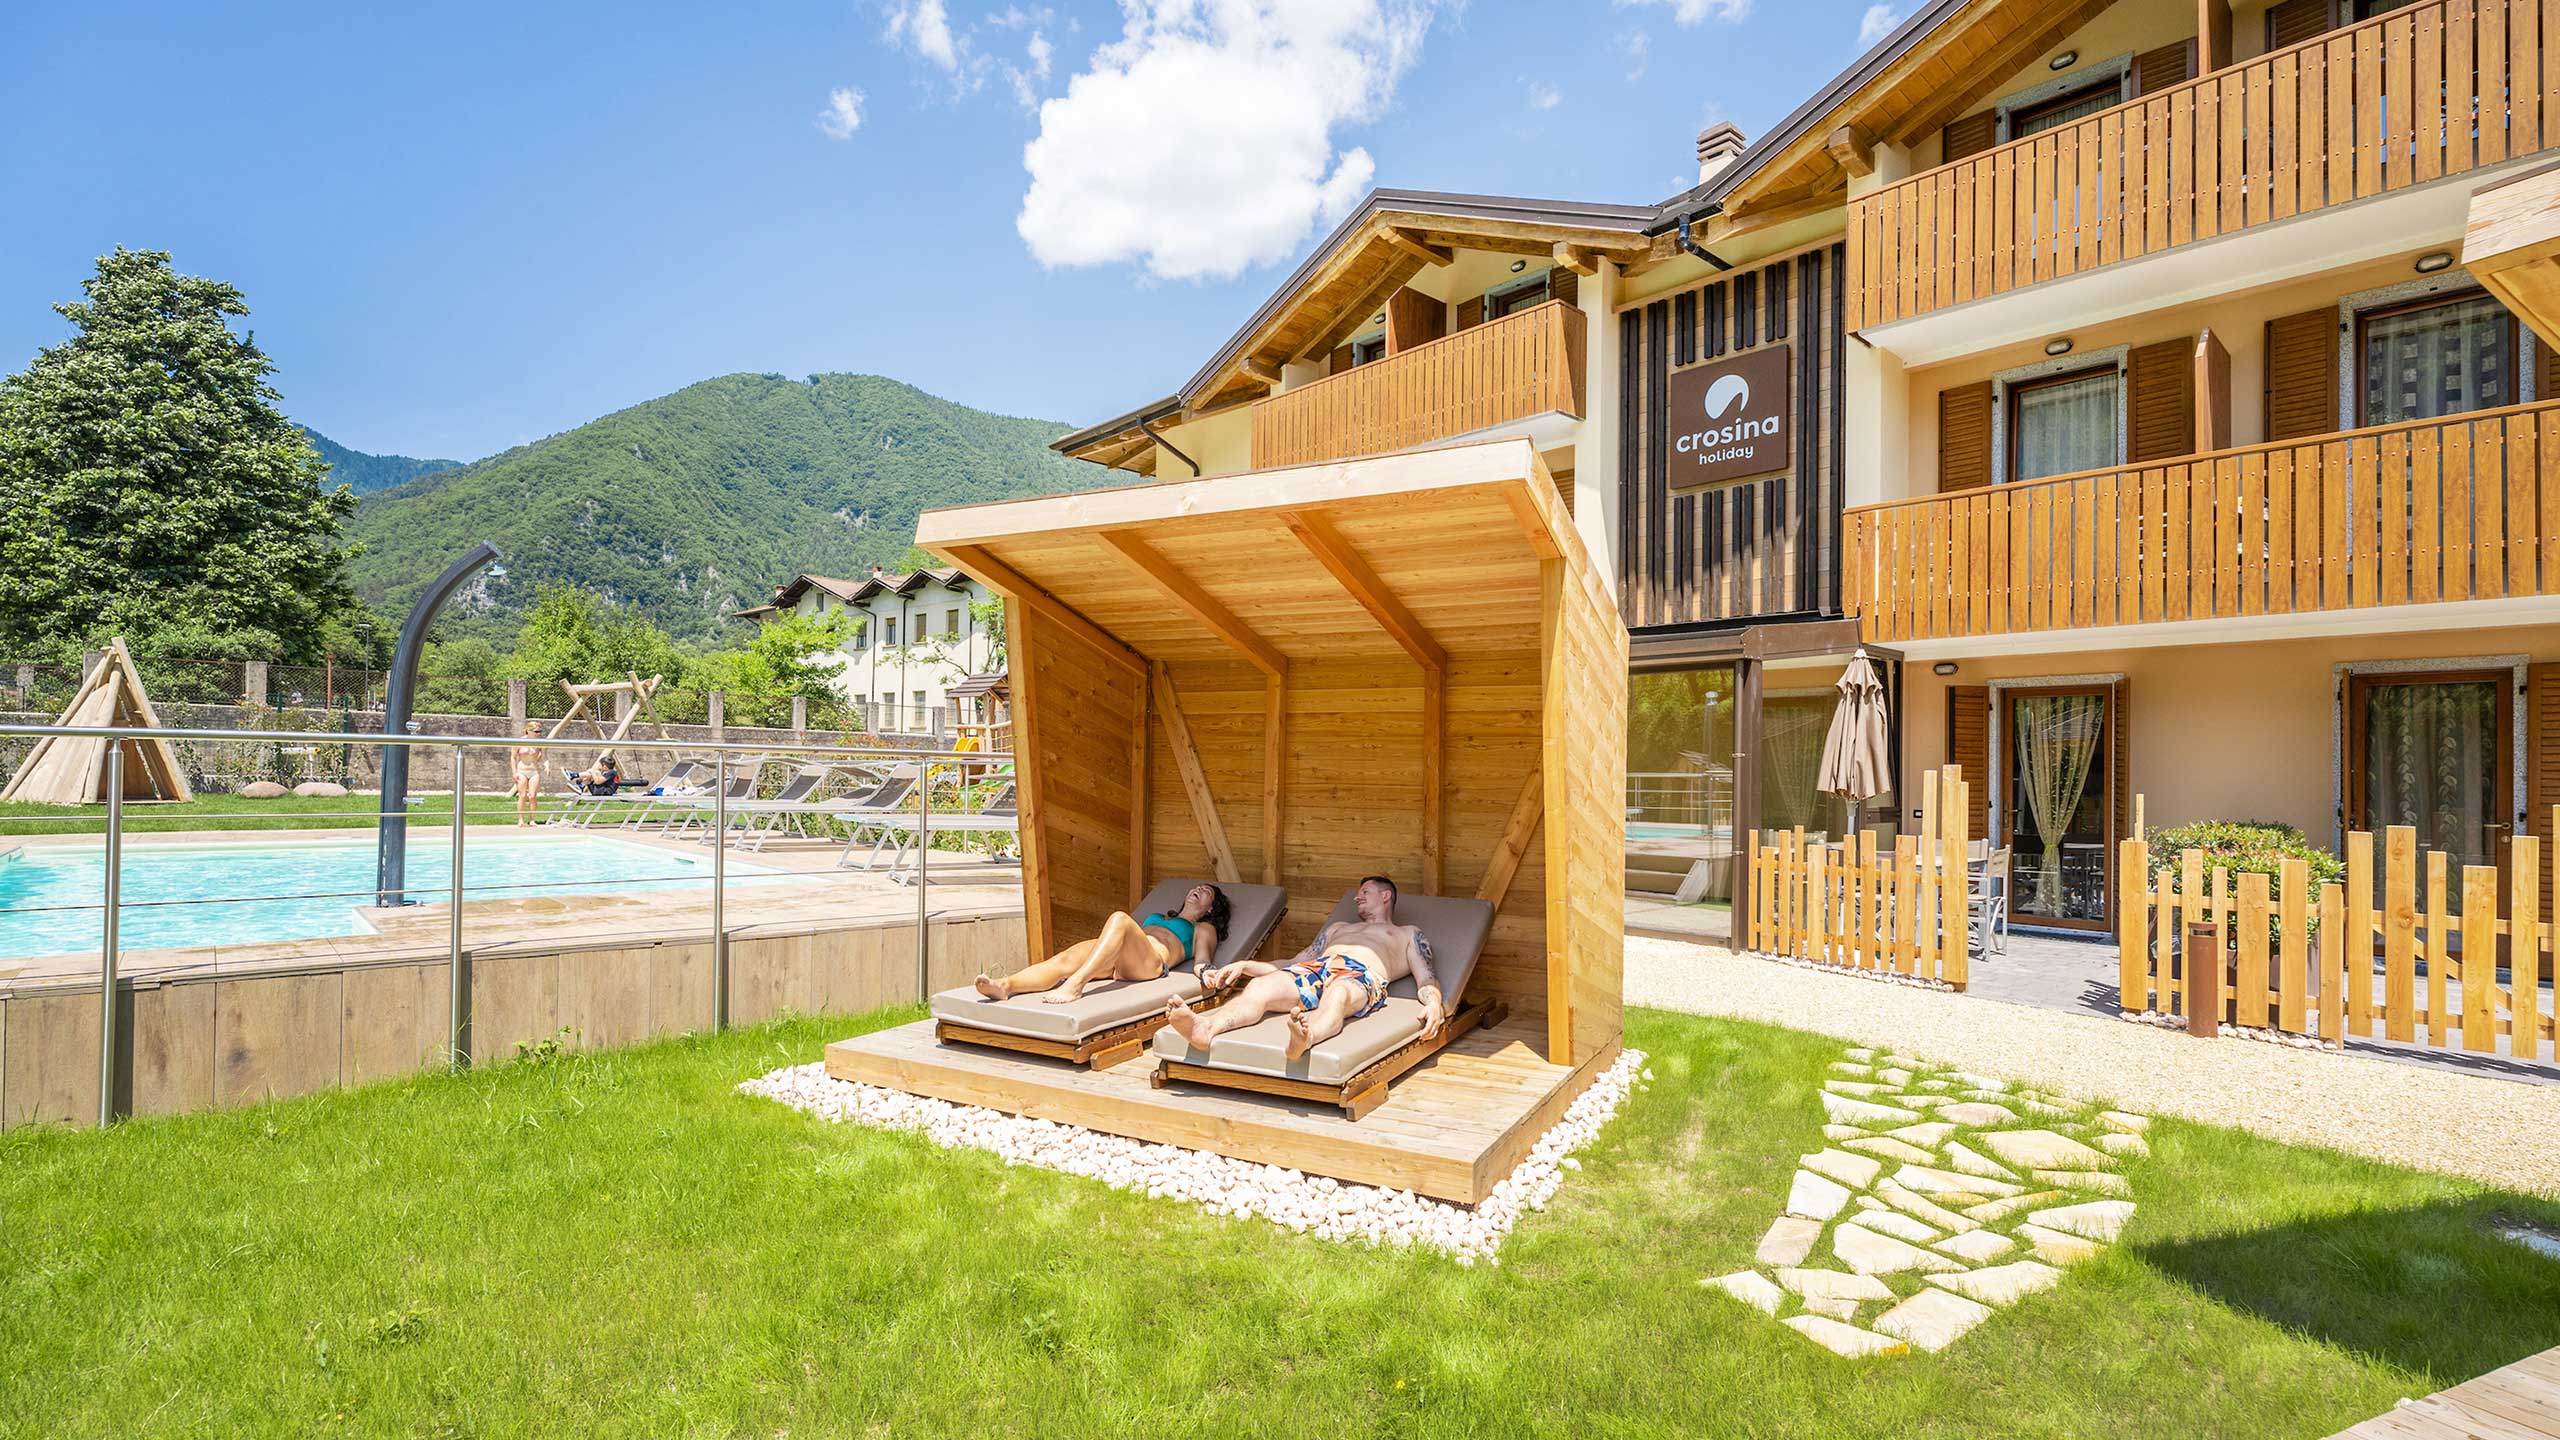 Crosina Holiday – Ferienwohnungen in der Nähe des Ledrosees im Trentino für einen Paar- oder Familienurlaub